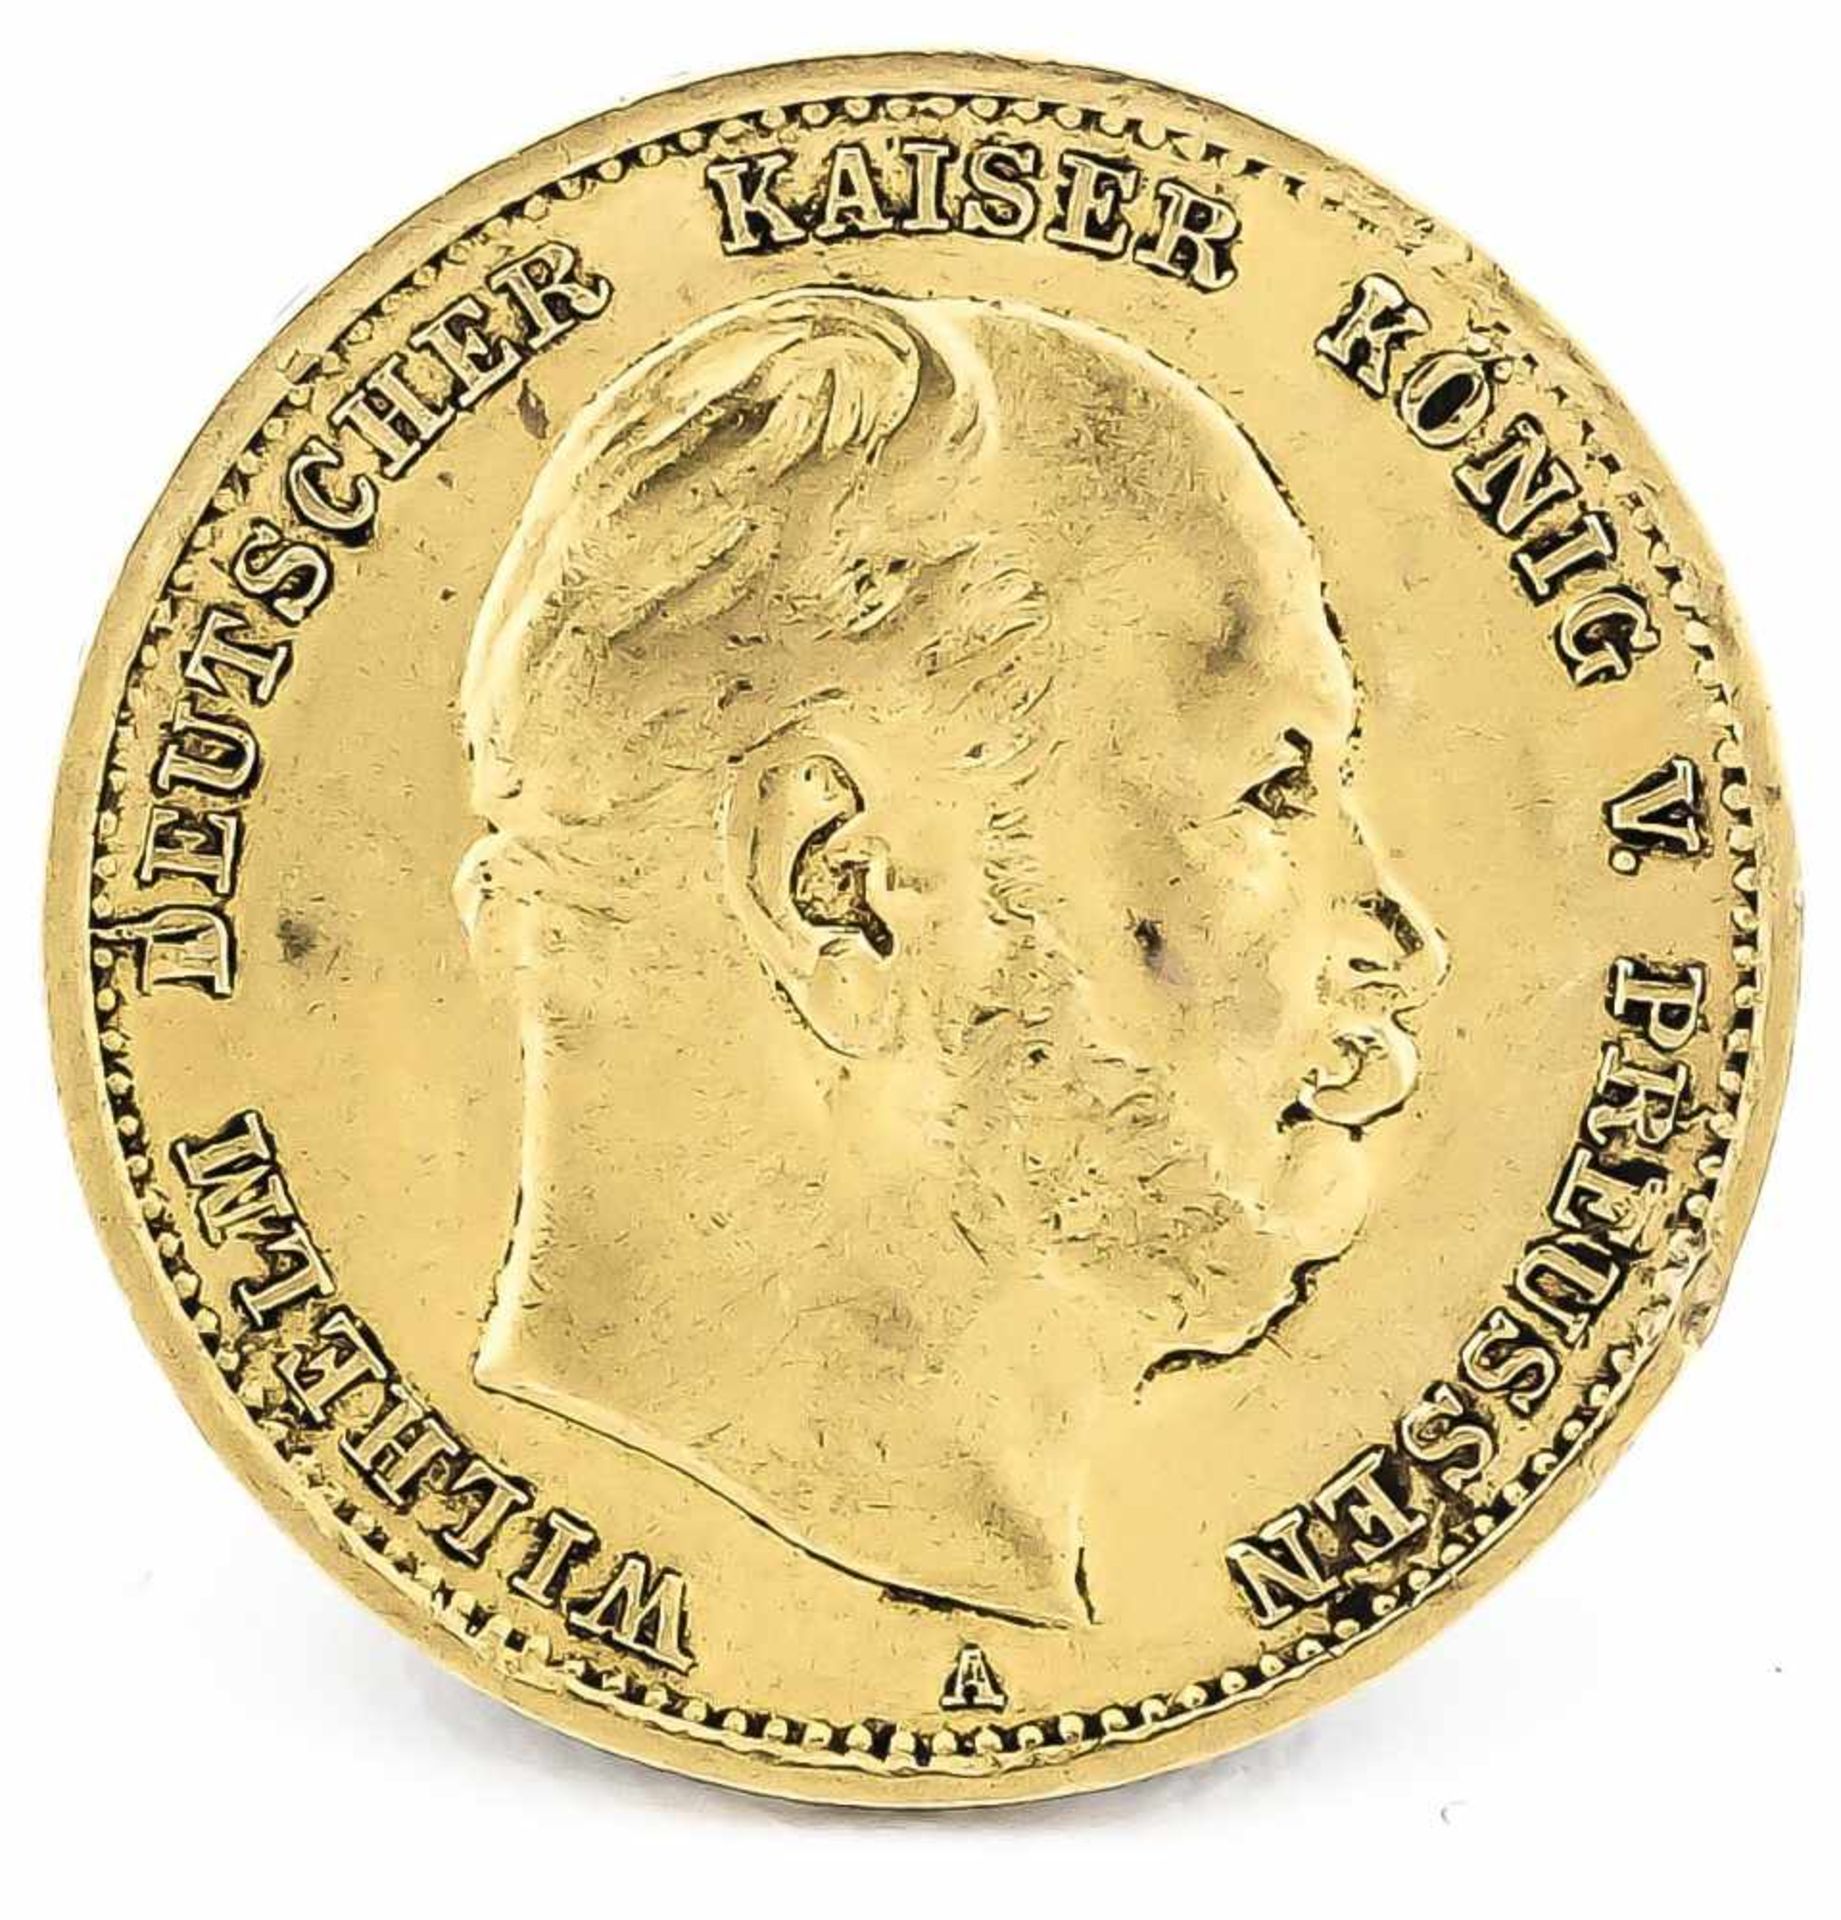 10 Mark, Preußen, Wilhelm Deutscher Kaiser König von Preußen, 1875 A, in ss-vz